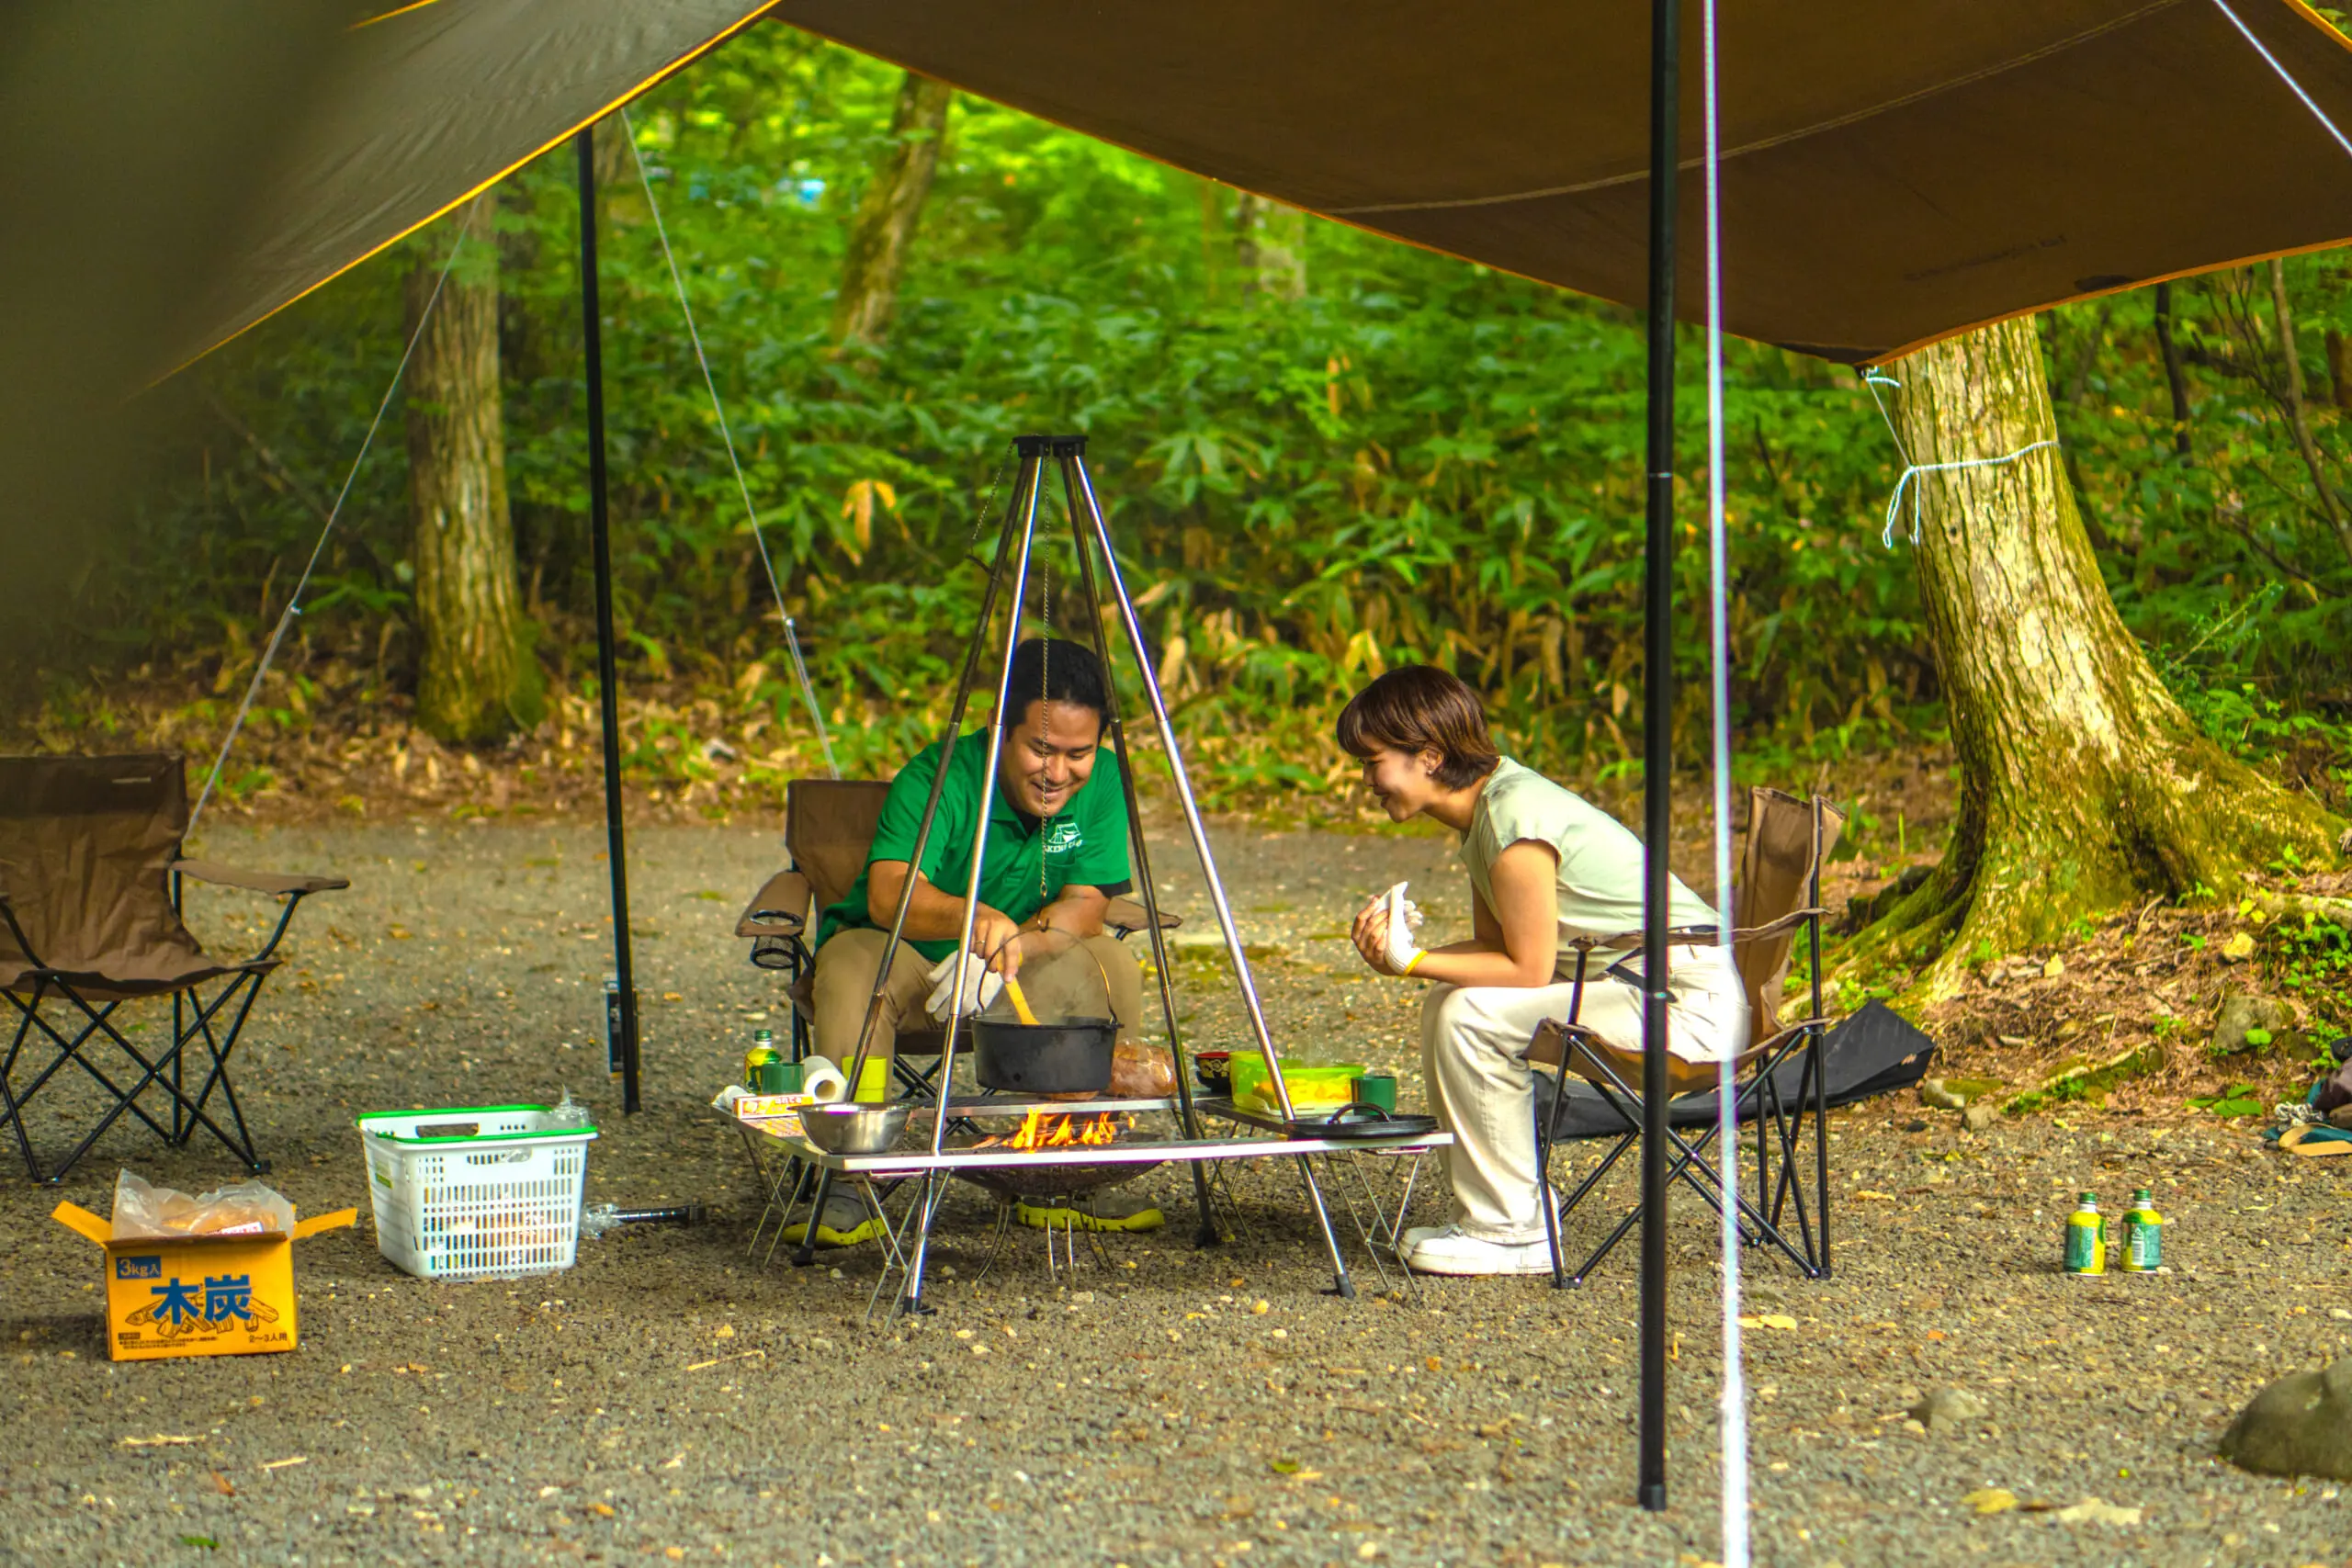 安心してキャンプデビューするために N A O明野高原キャンプ場 の山川さんにいろいろ聞いてみた 岐阜県郡上市 アウトドア専門の観光webサイト Gujo Outdoor Experiences